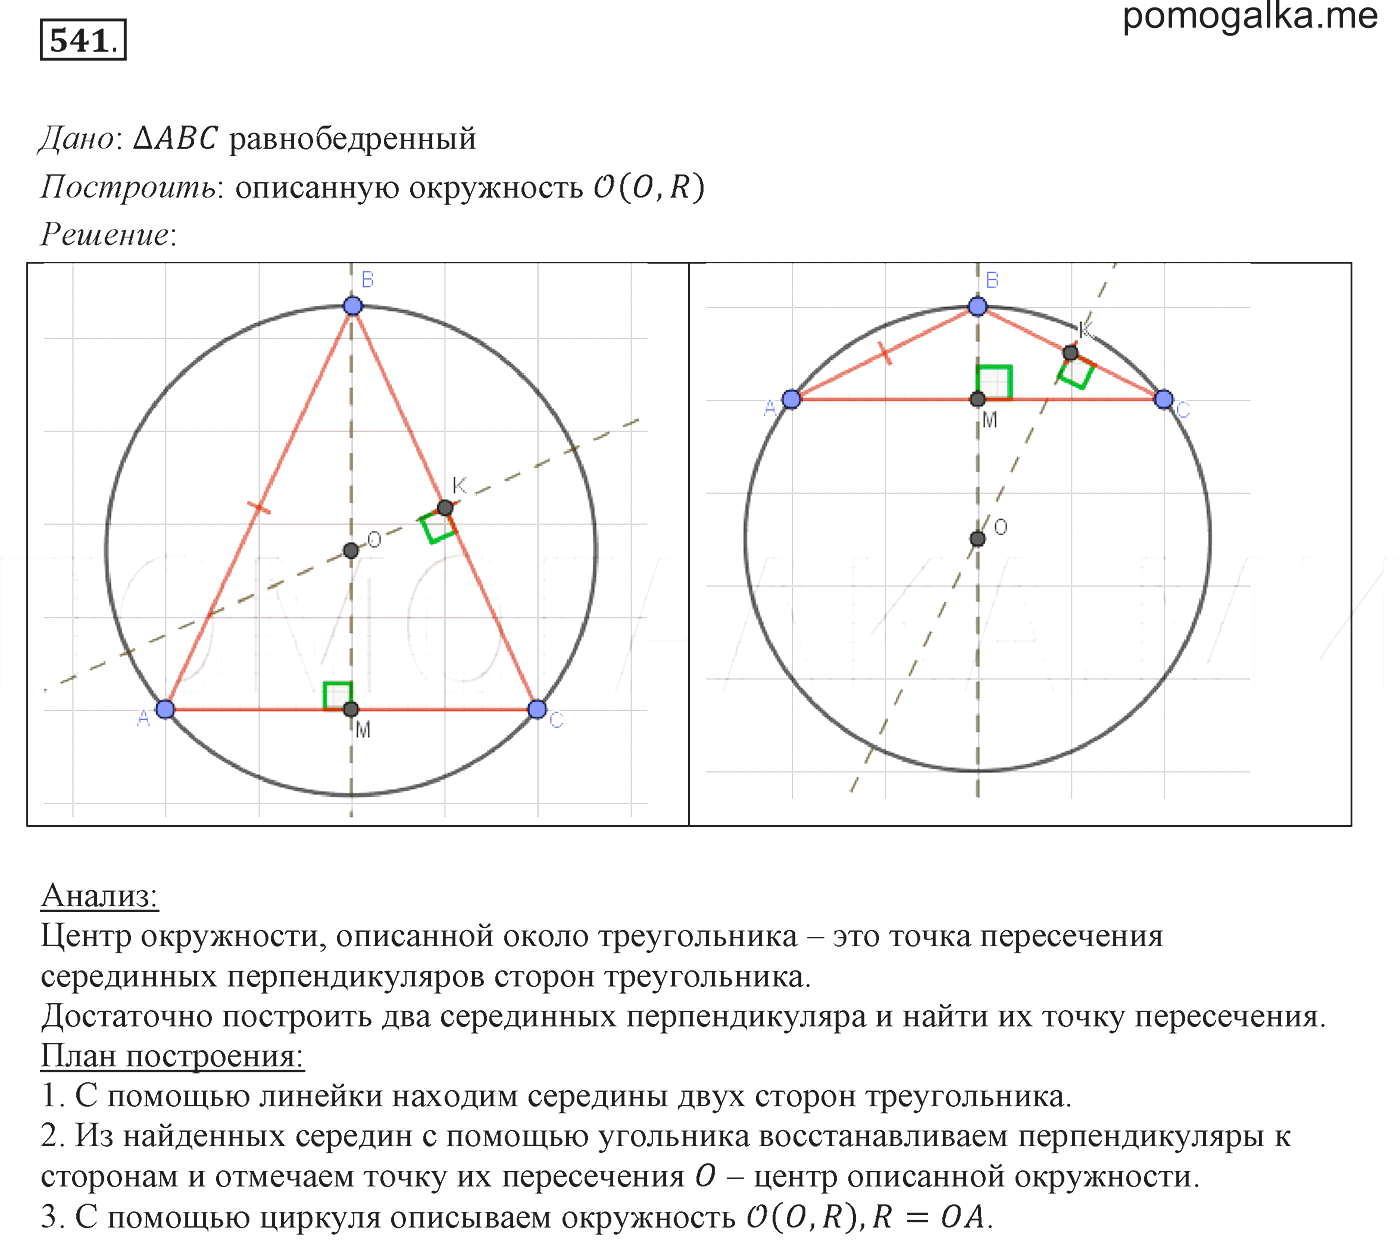 Описанная и вписанная окружность треугольника 7 класс